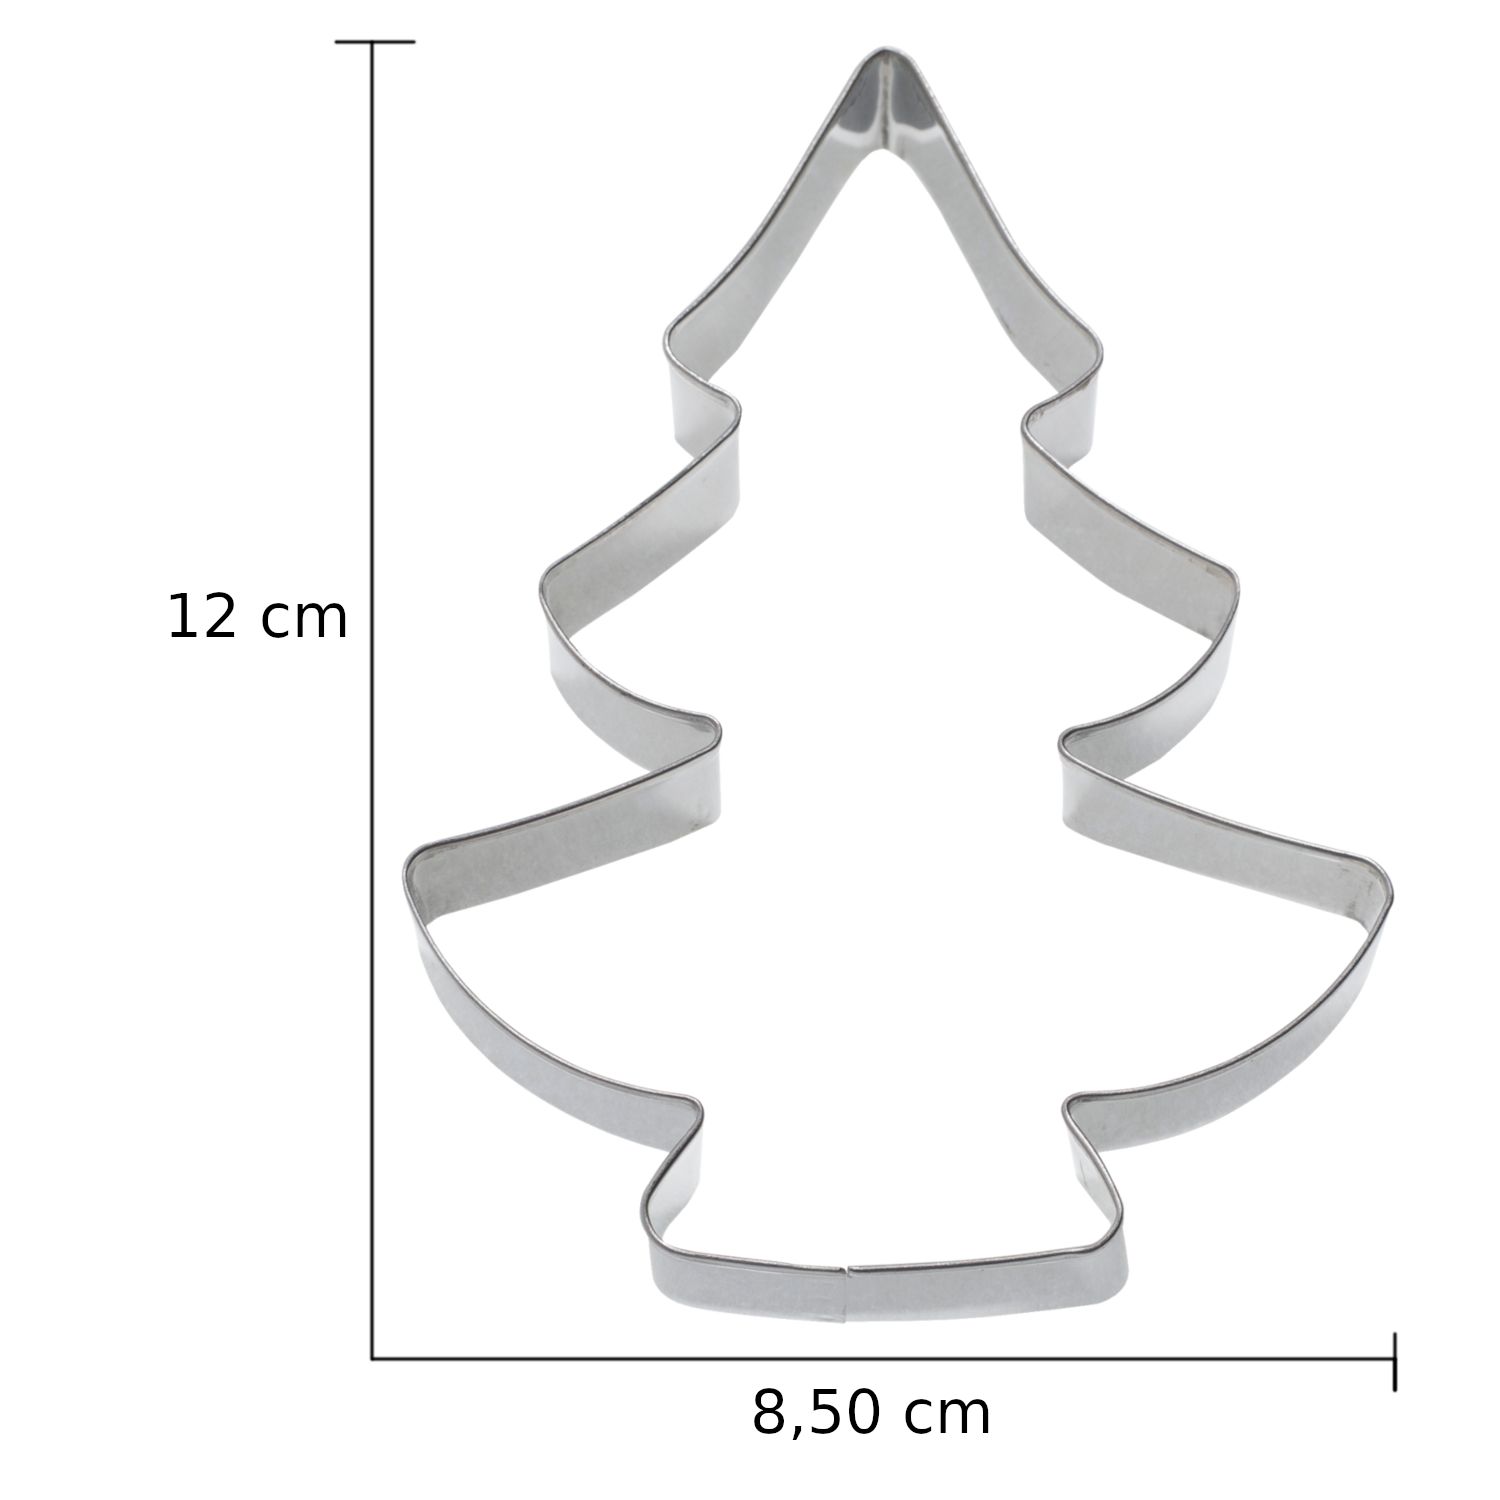 Κουπάτ ανοξείδωτο χριστουγεννιάτικο δέντρο 12cm Νο 3516